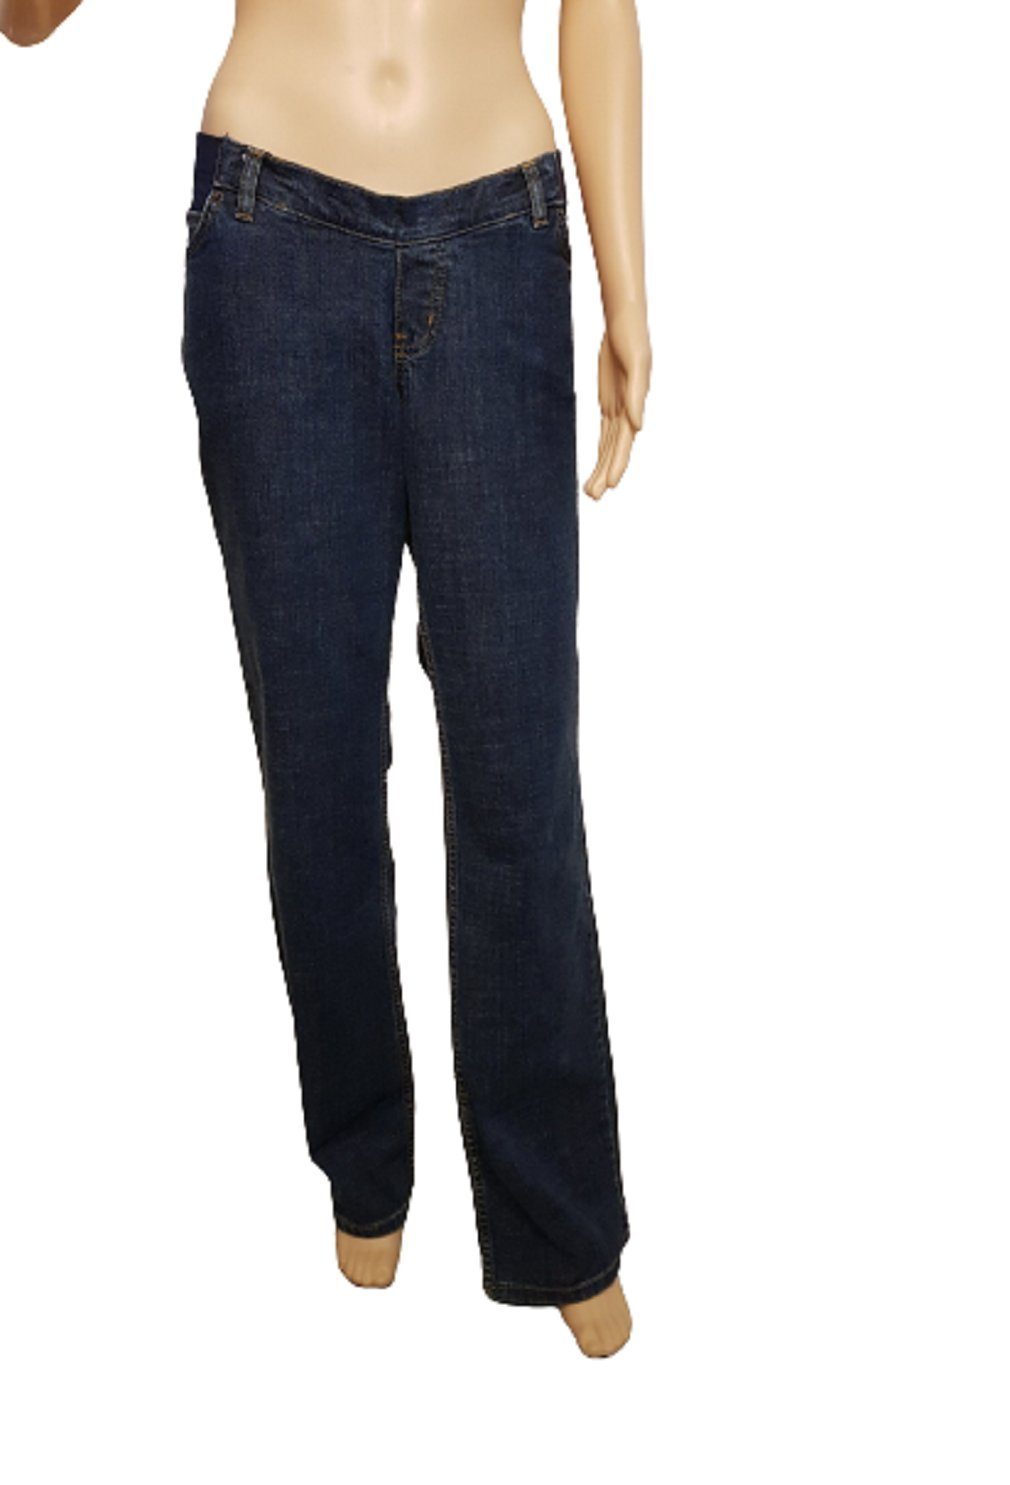 Bellybutton Umstandshose K3-22100 dunkelblau Jeans